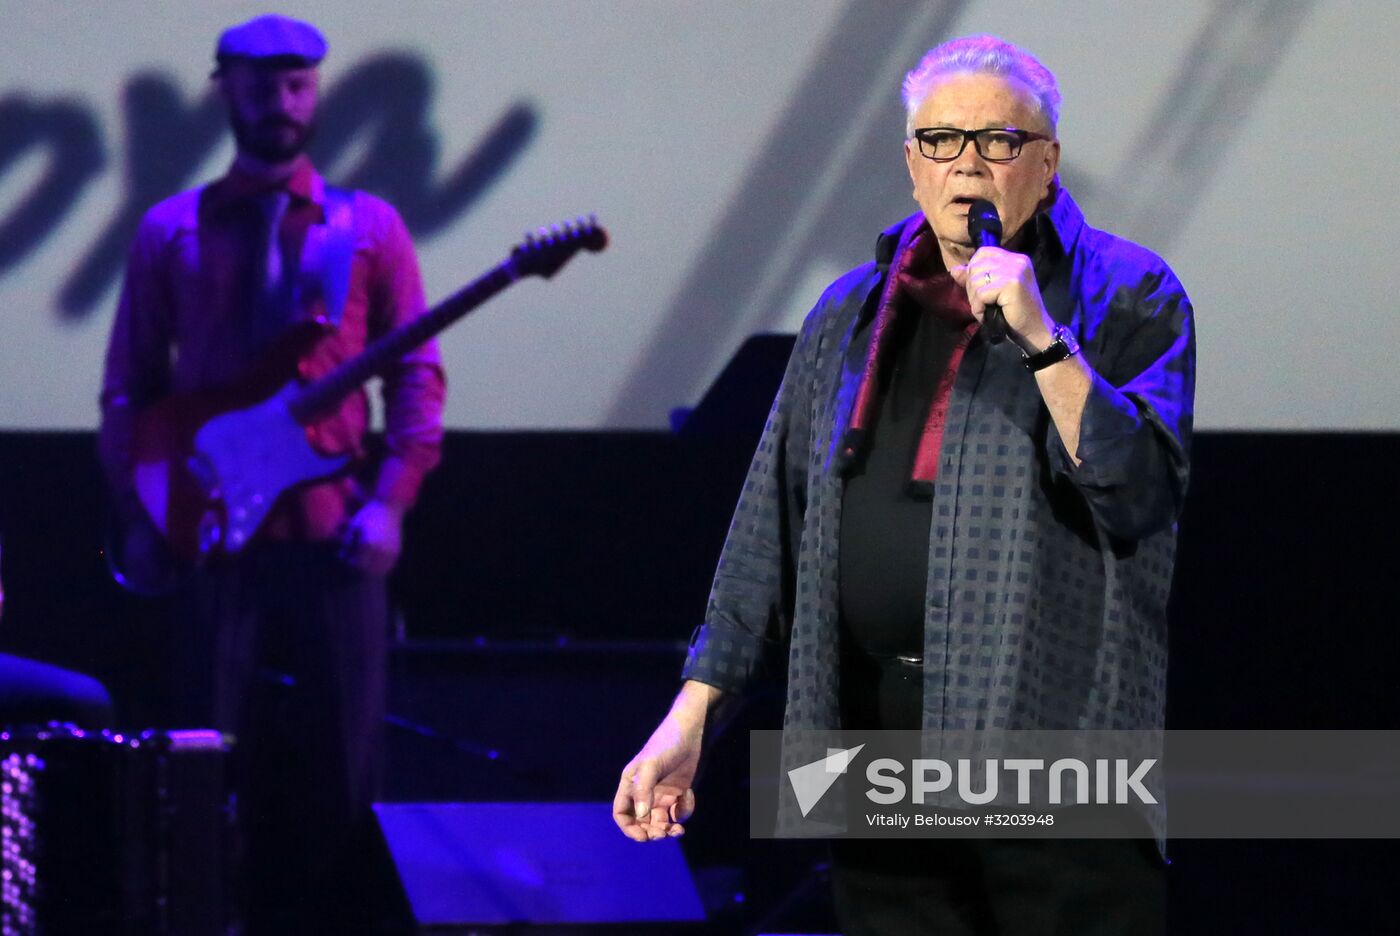 Concert marks Oleg Yefremov's 90th birthday